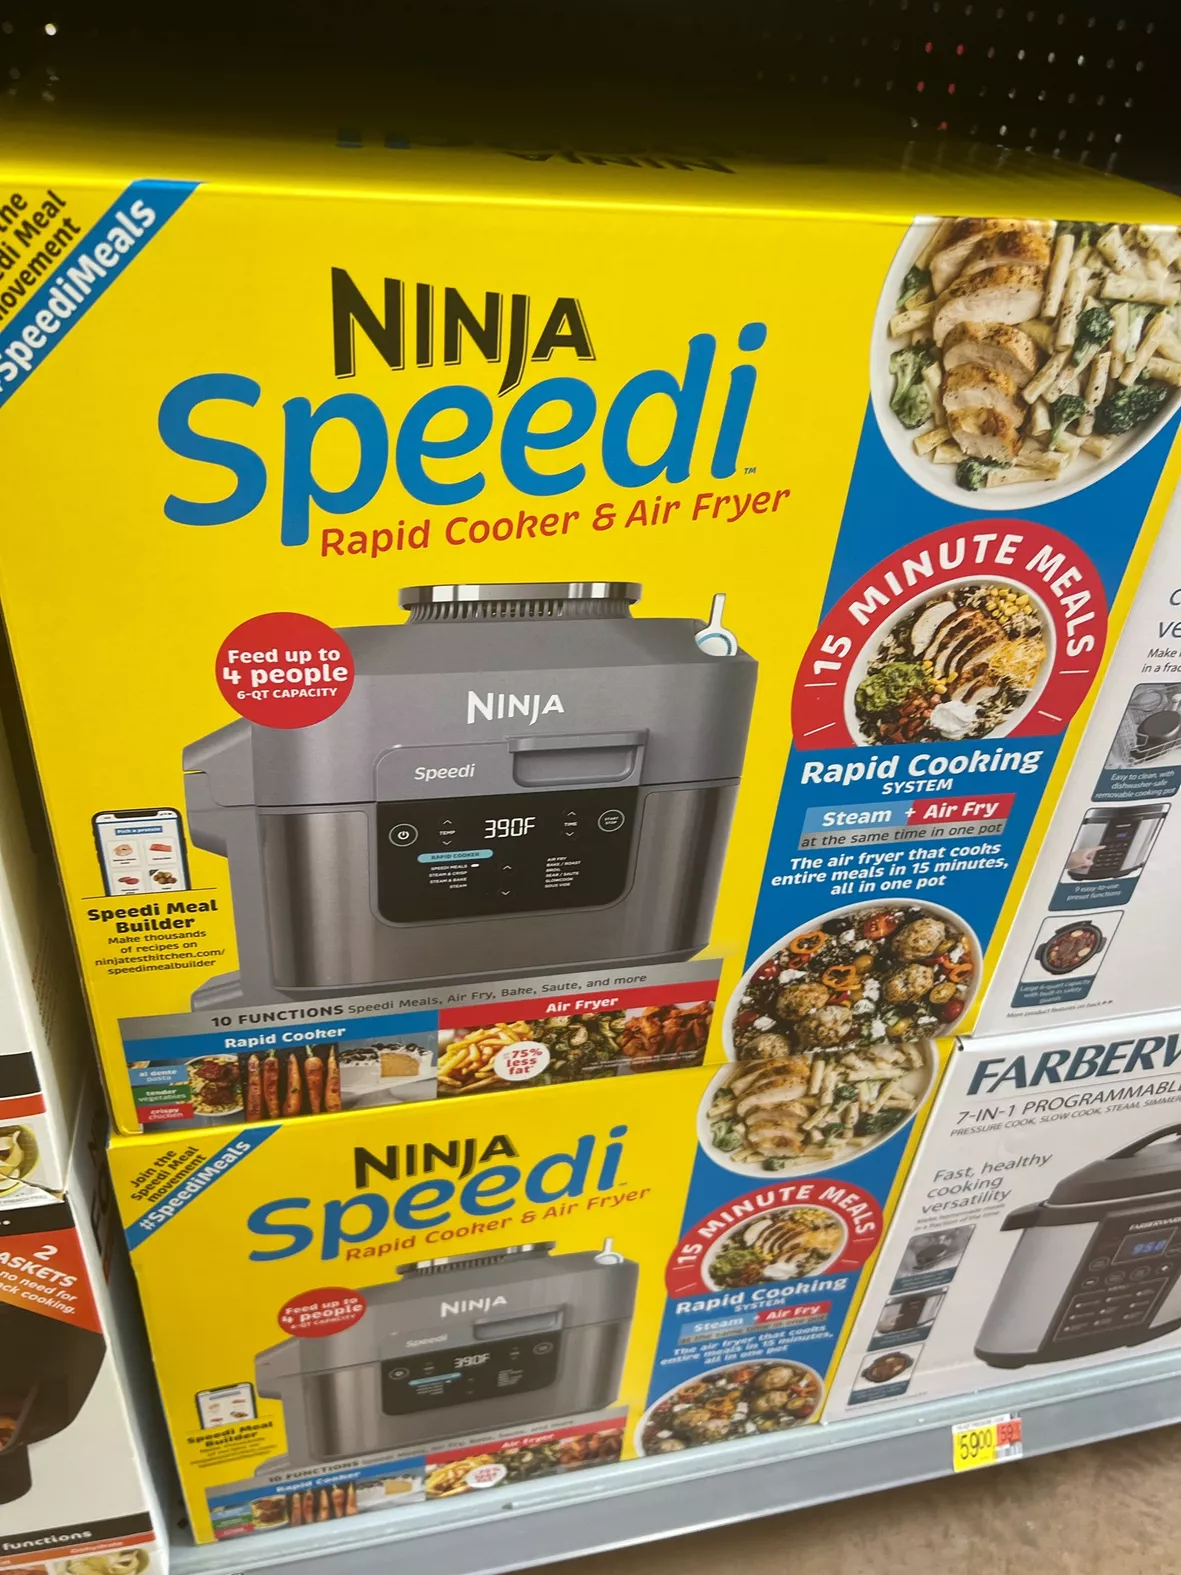 Cooking With The Ninja Speedi Rapid Cooker & Air Fryer 